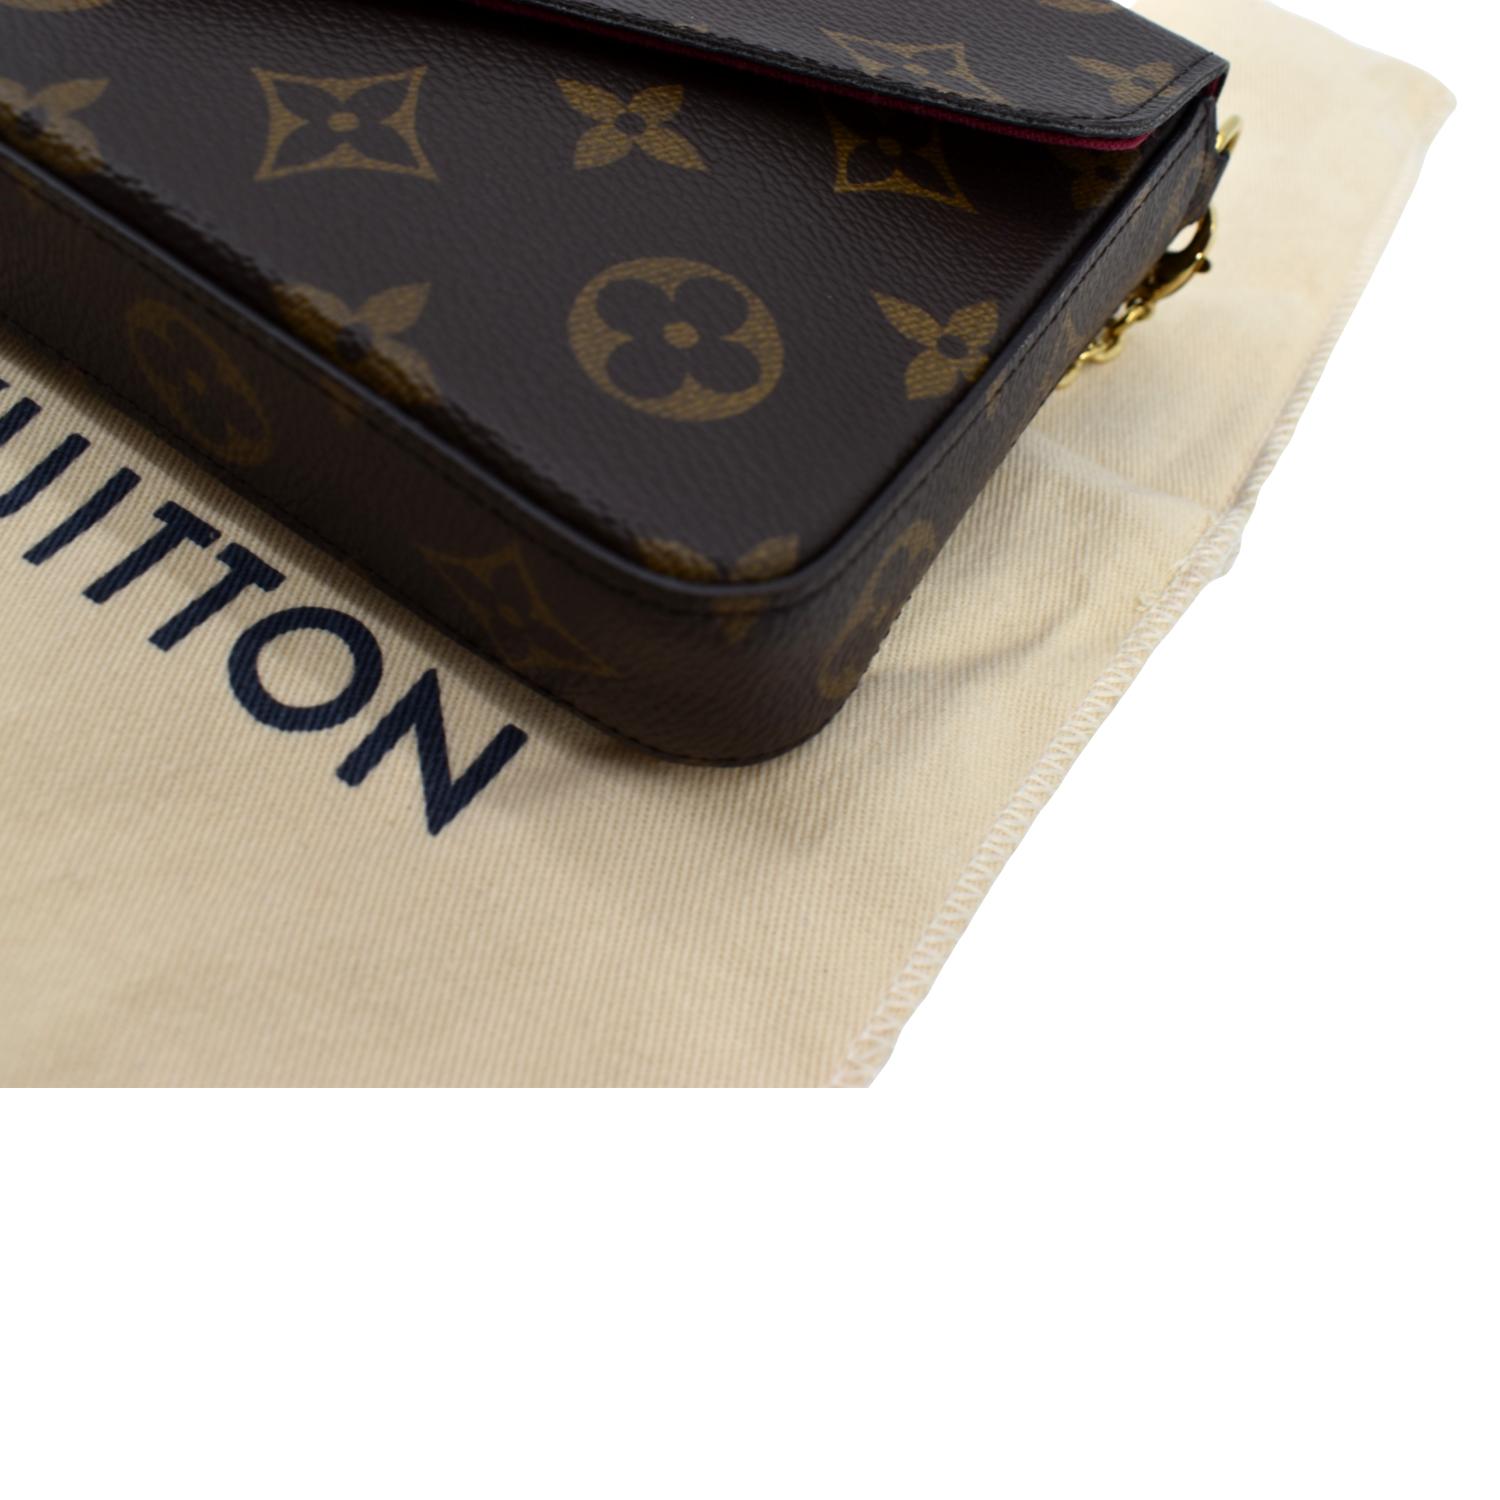 Sold at Auction: Louis Brown, Louis Vuitton - Large Pochette